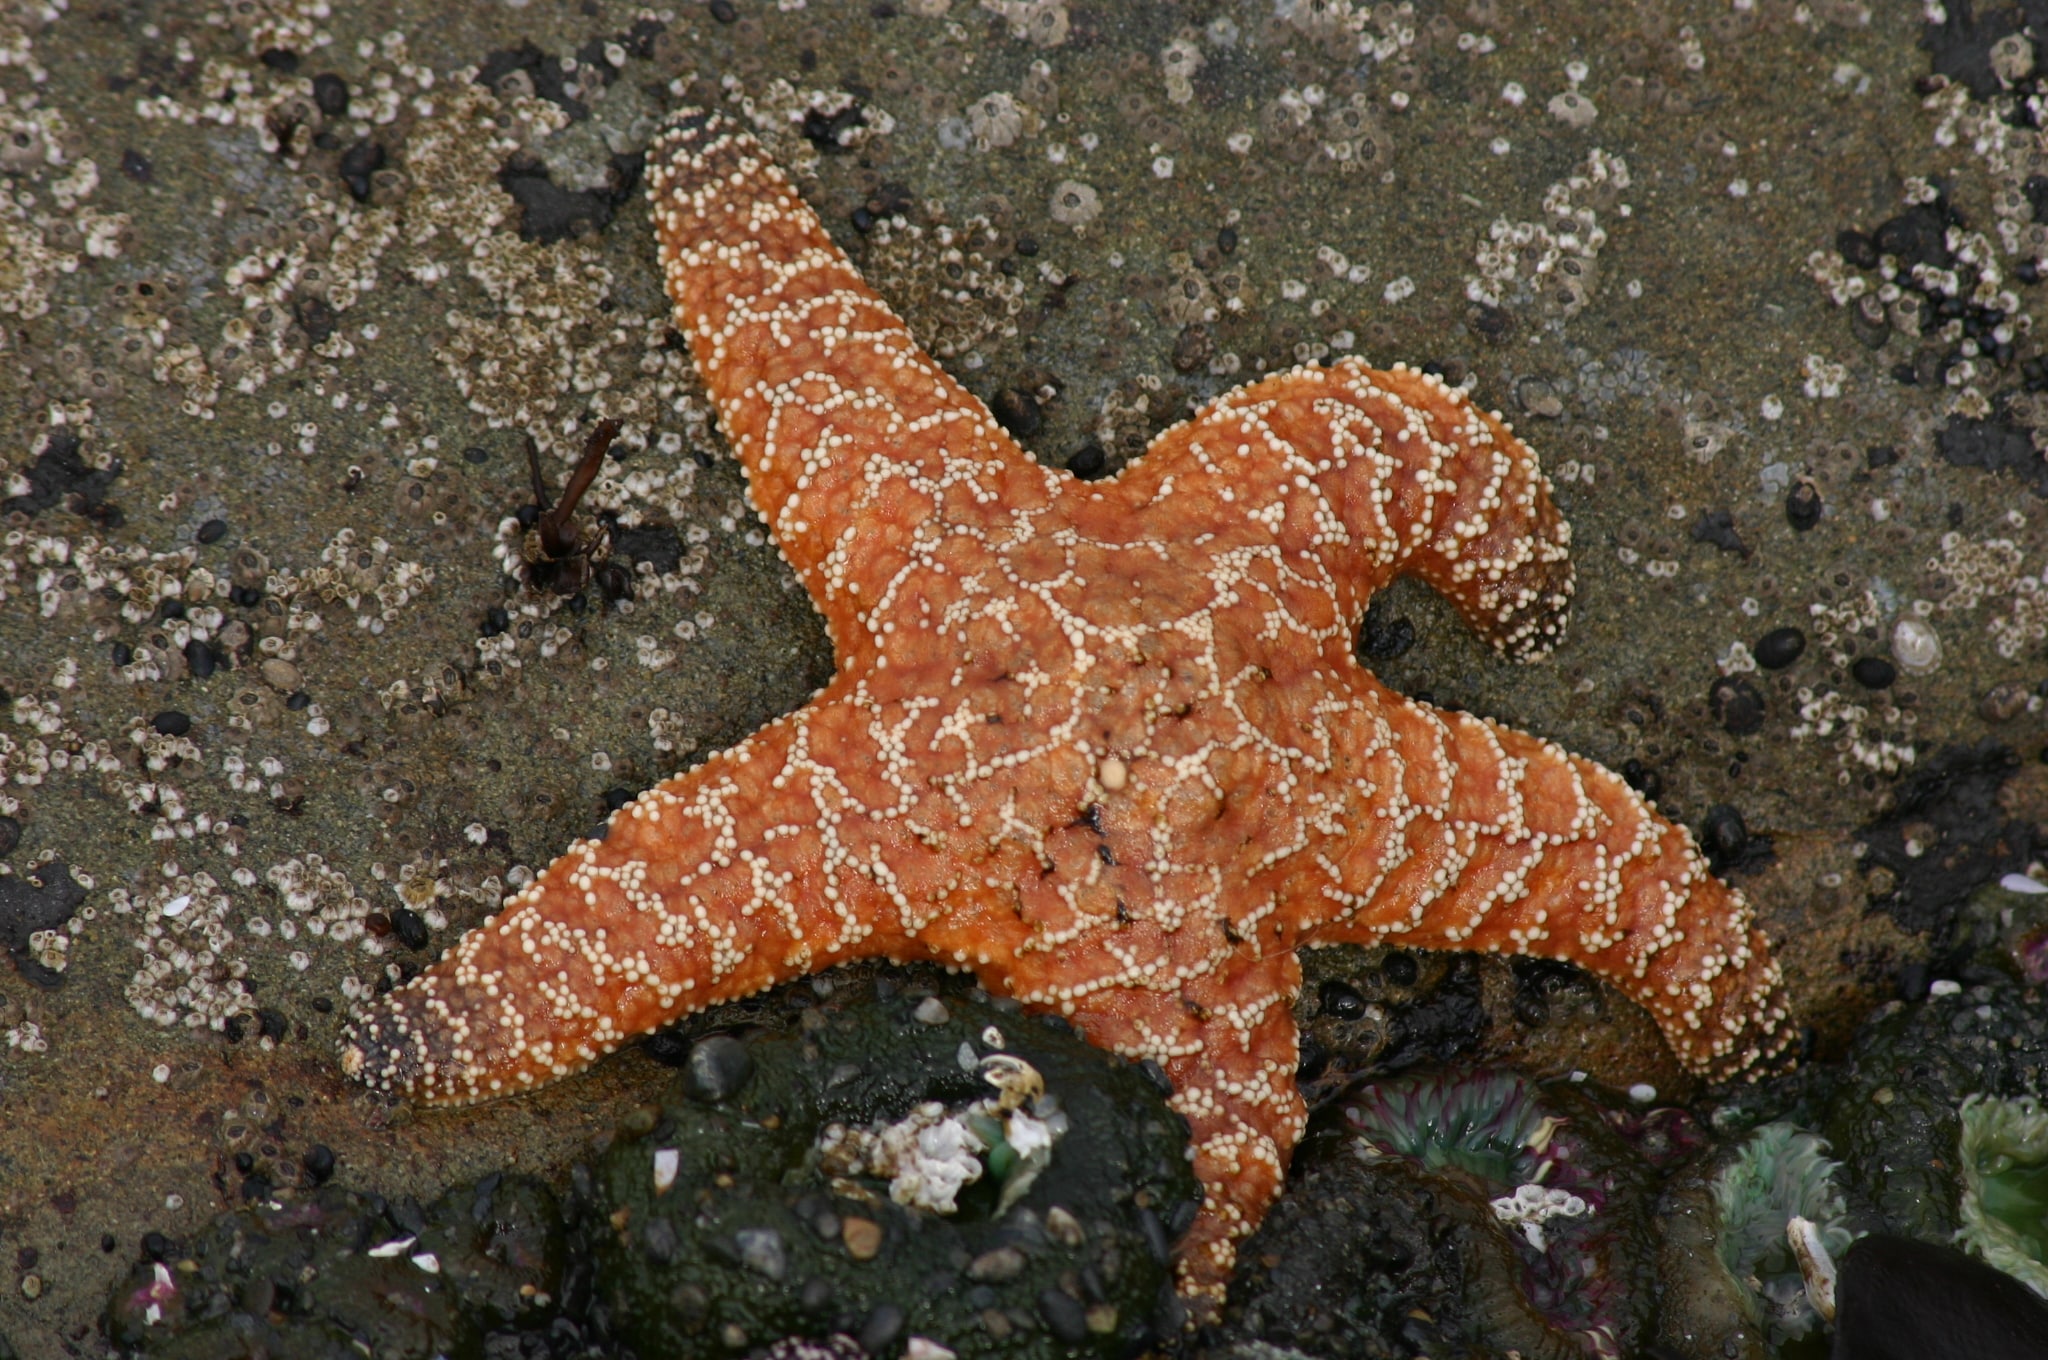  What Animals Eat Starfish